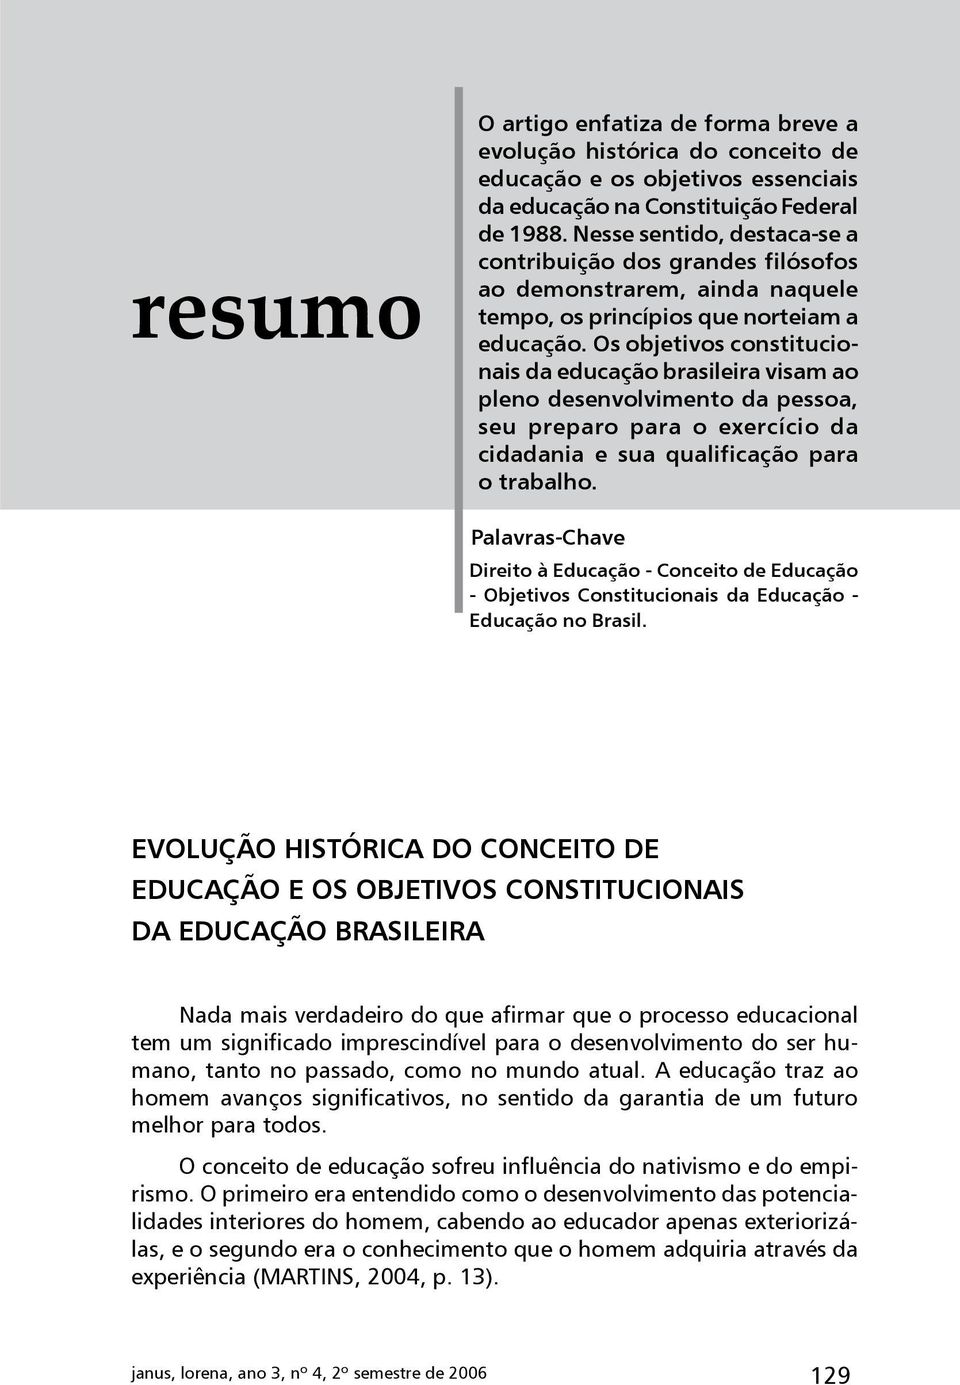 Os objetivos constitucionais da educação brasileira visam ao pleno desenvolvimento da pessoa, seu preparo para o exercício da cidadania e sua qualificação para o trabalho.